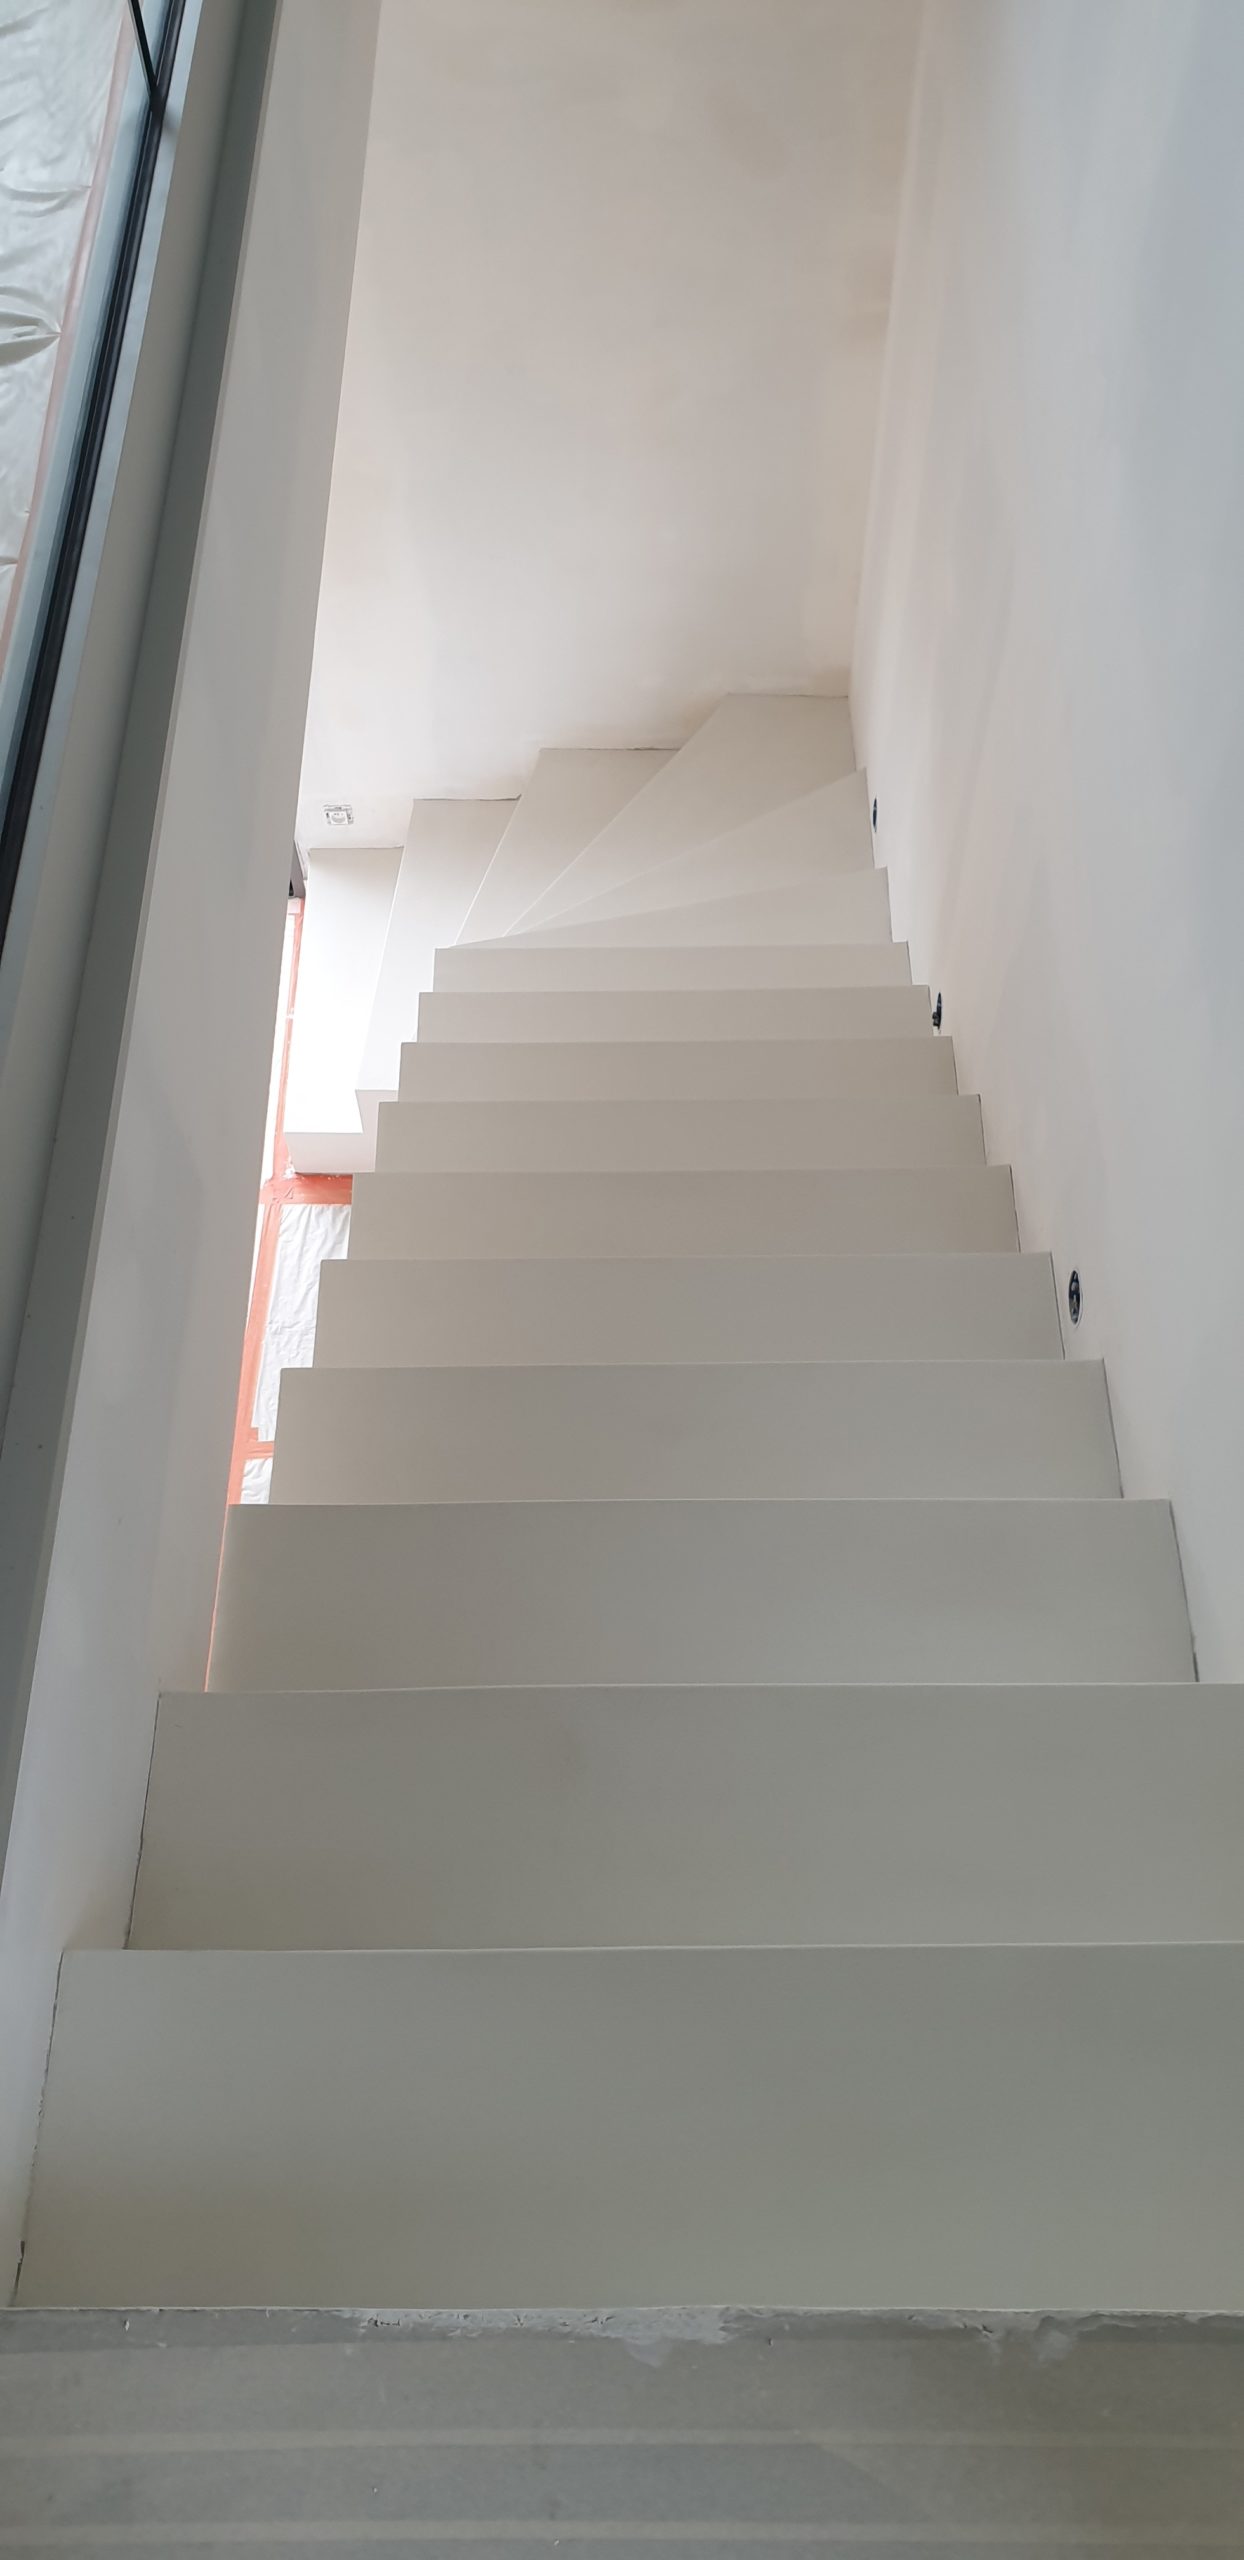 Escalier béton avec une finition simplifiée en béton ciré blanc